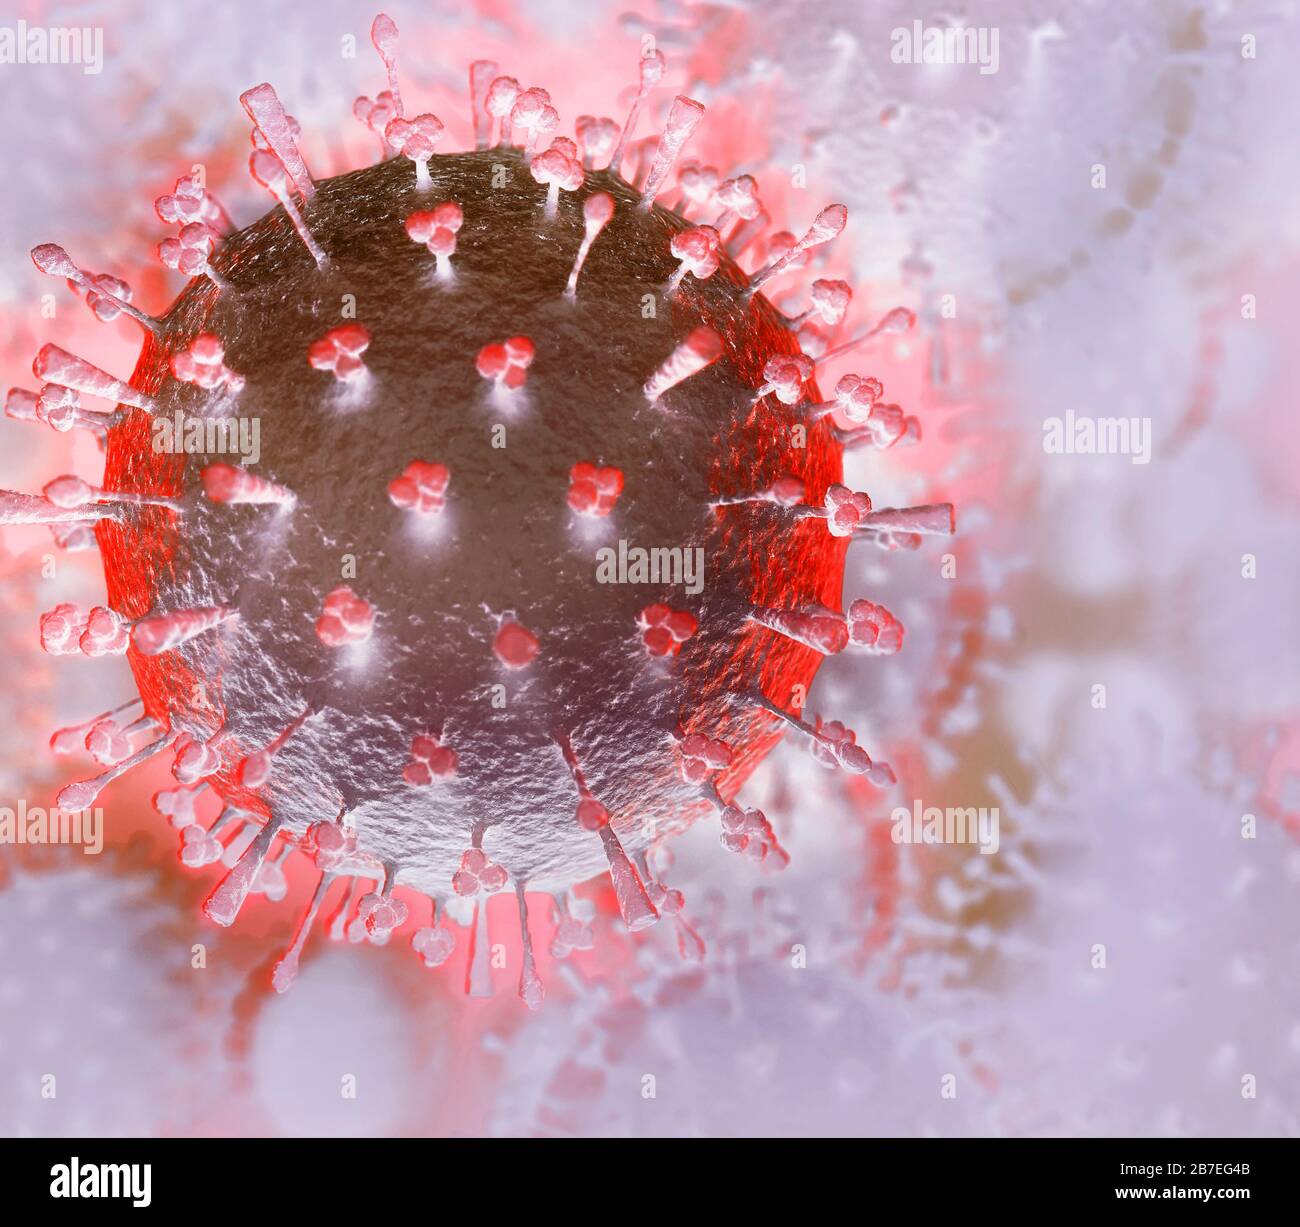 Coronavirus, COVID-19, rendu artistique en couleurs vives. Illustration conceptuelle des particules du virus Corona. Propagation du virus, de l'épidémie et de la pandémie Banque D'Images